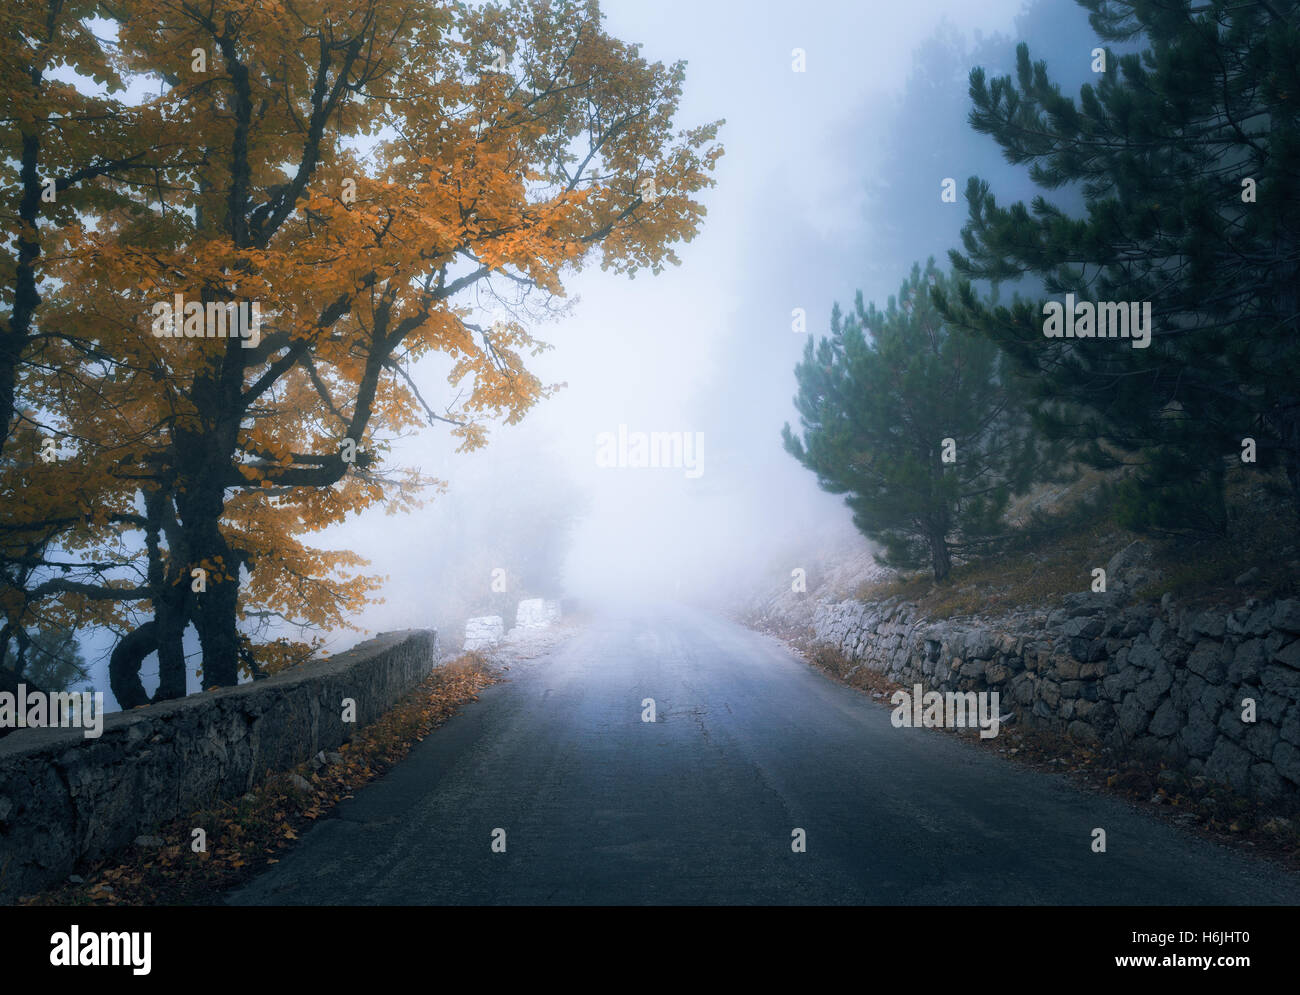 Automne forêt brumeuse mystique avec road. Misty automne Woods dans le brouillard. Paysage avec des arbres colorés, chemin Mountain, orange et jaune Banque D'Images